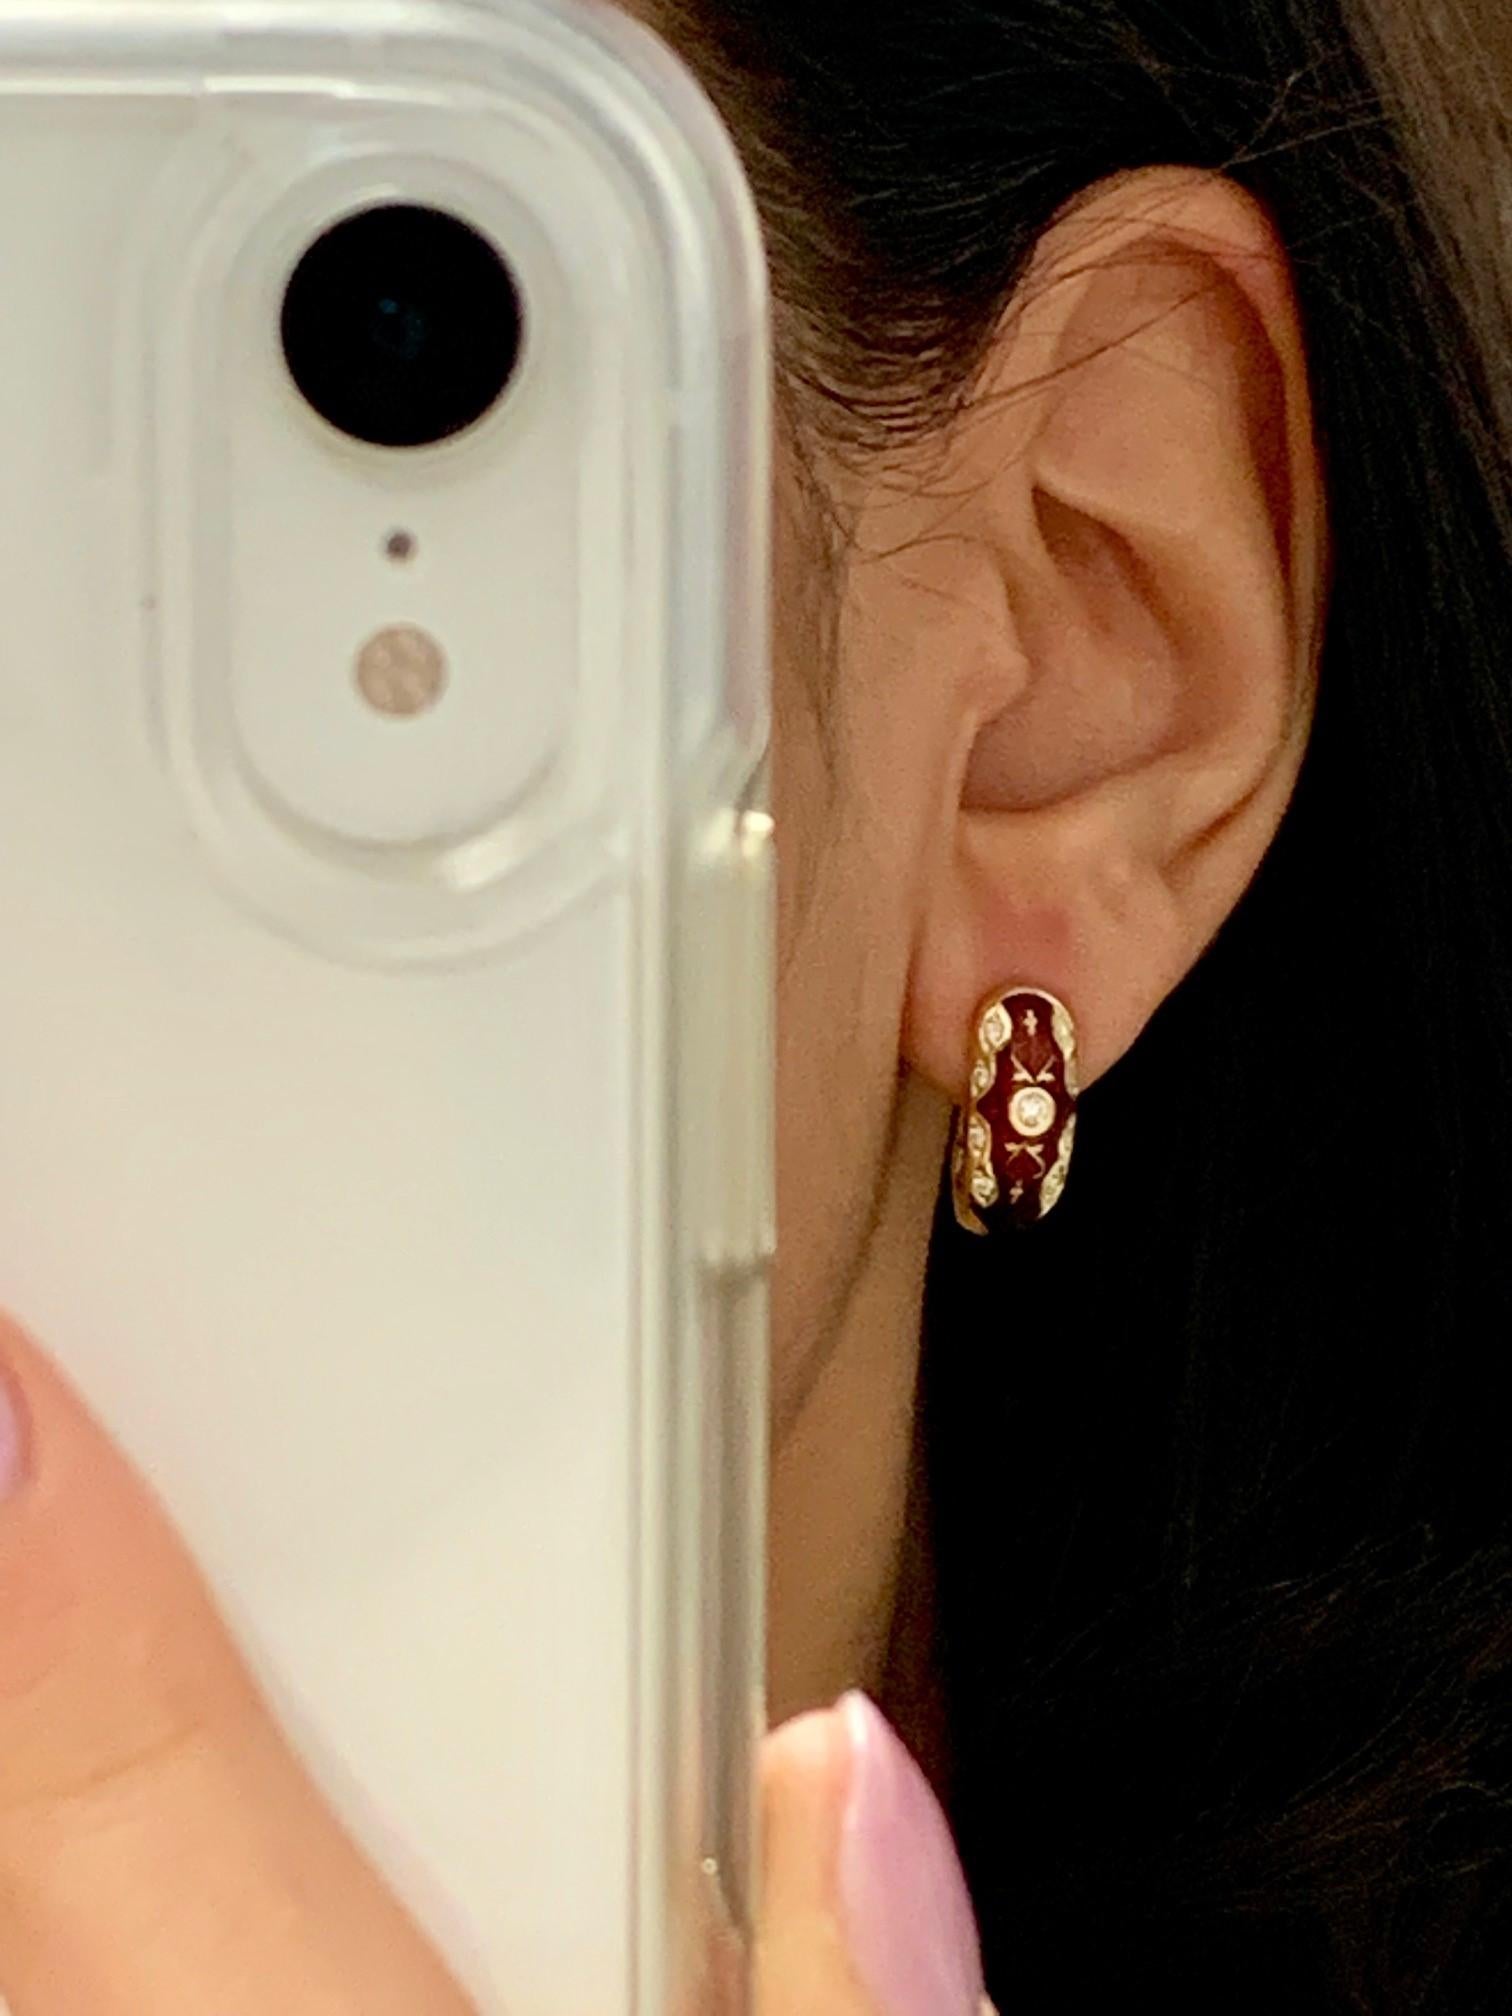 red enamel earrings